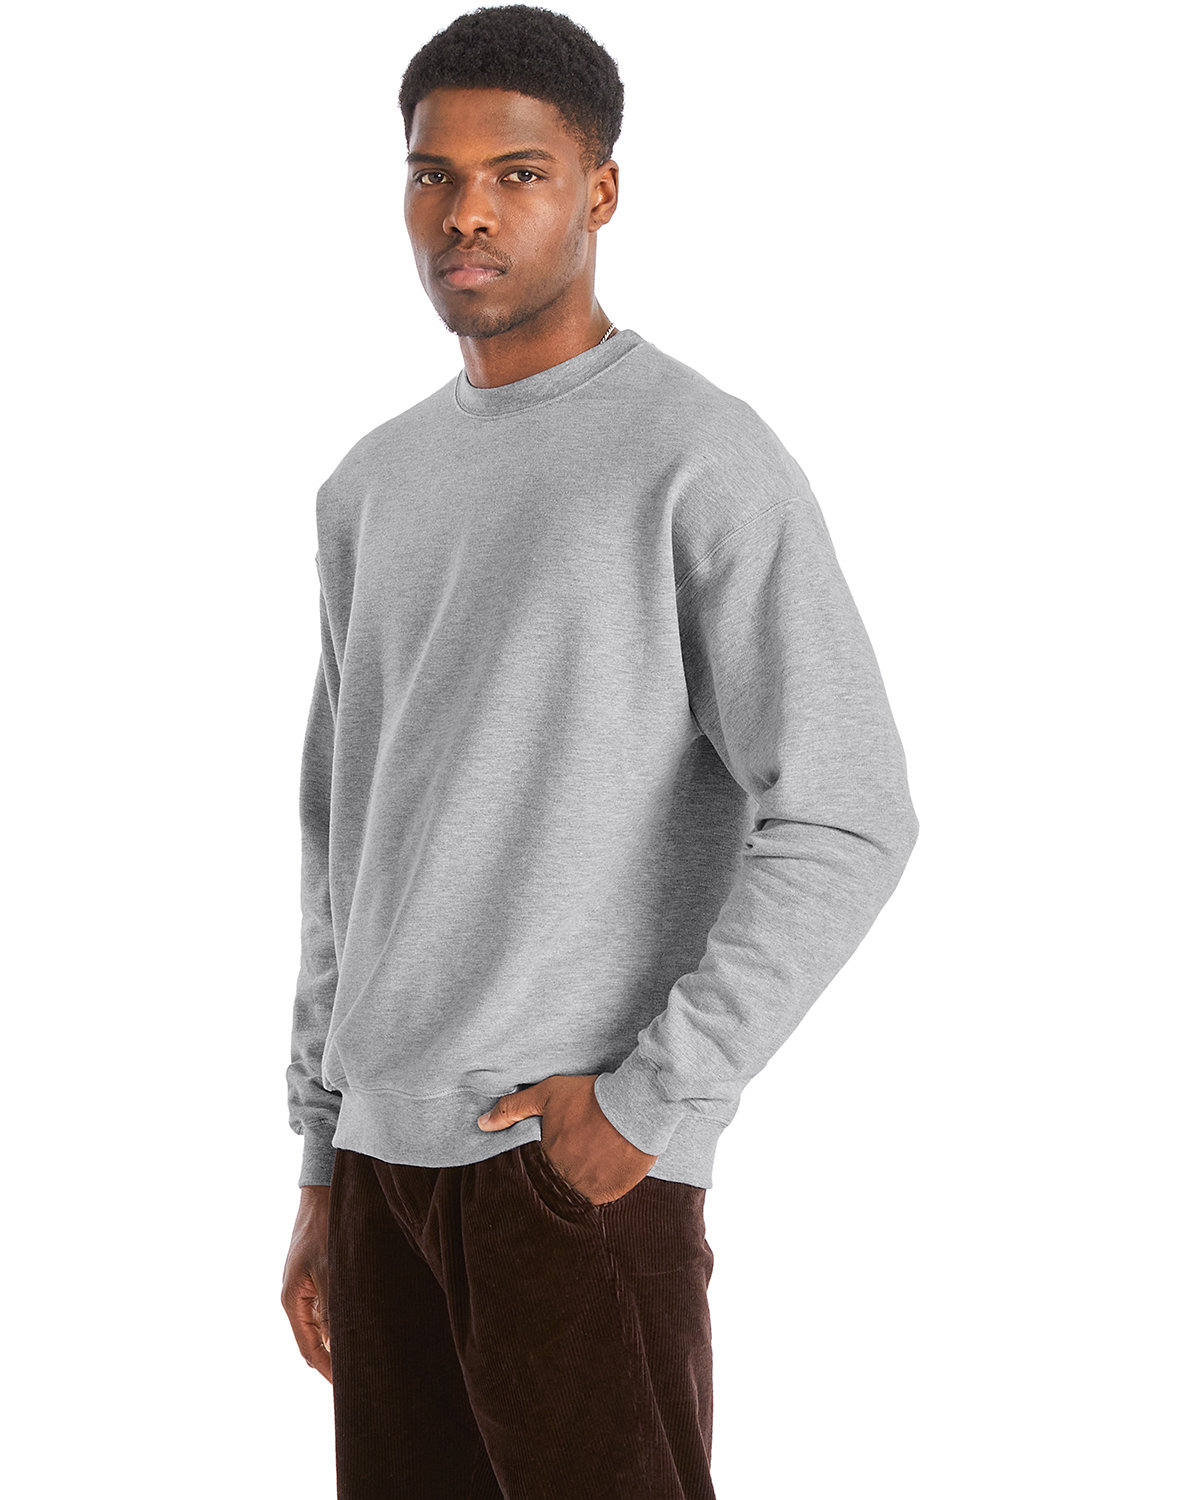 Hanes Perfect Sweats Crew Sweatshirt | alphabroder